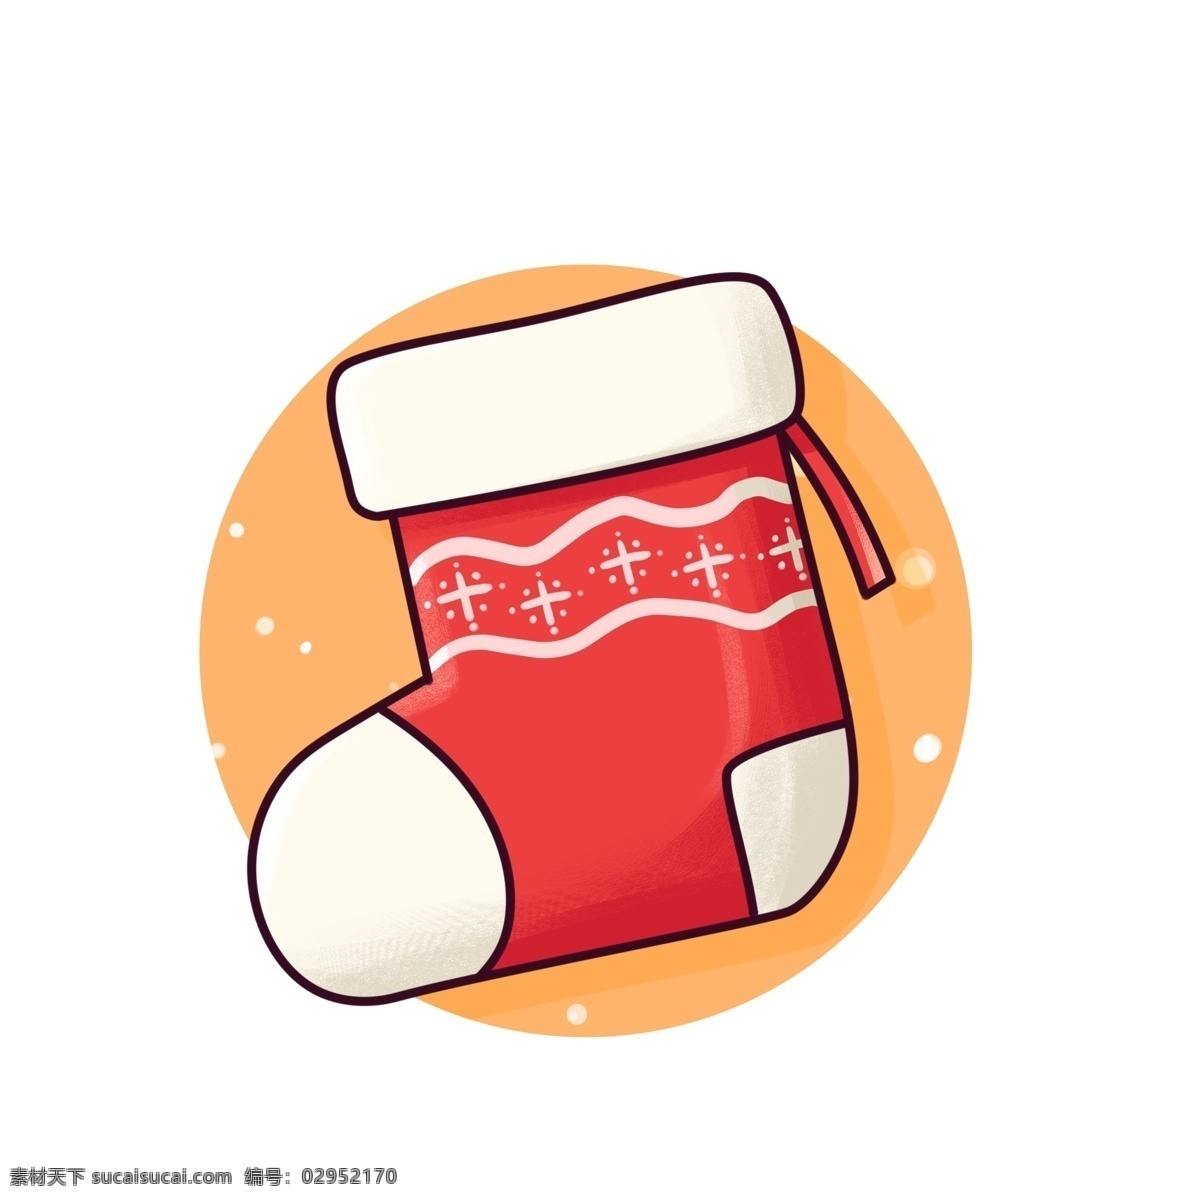 卡通 圣诞 可爱 手绘 贴纸 装饰设计 元素 节日 装饰 礼物 手账 平安节 袜子